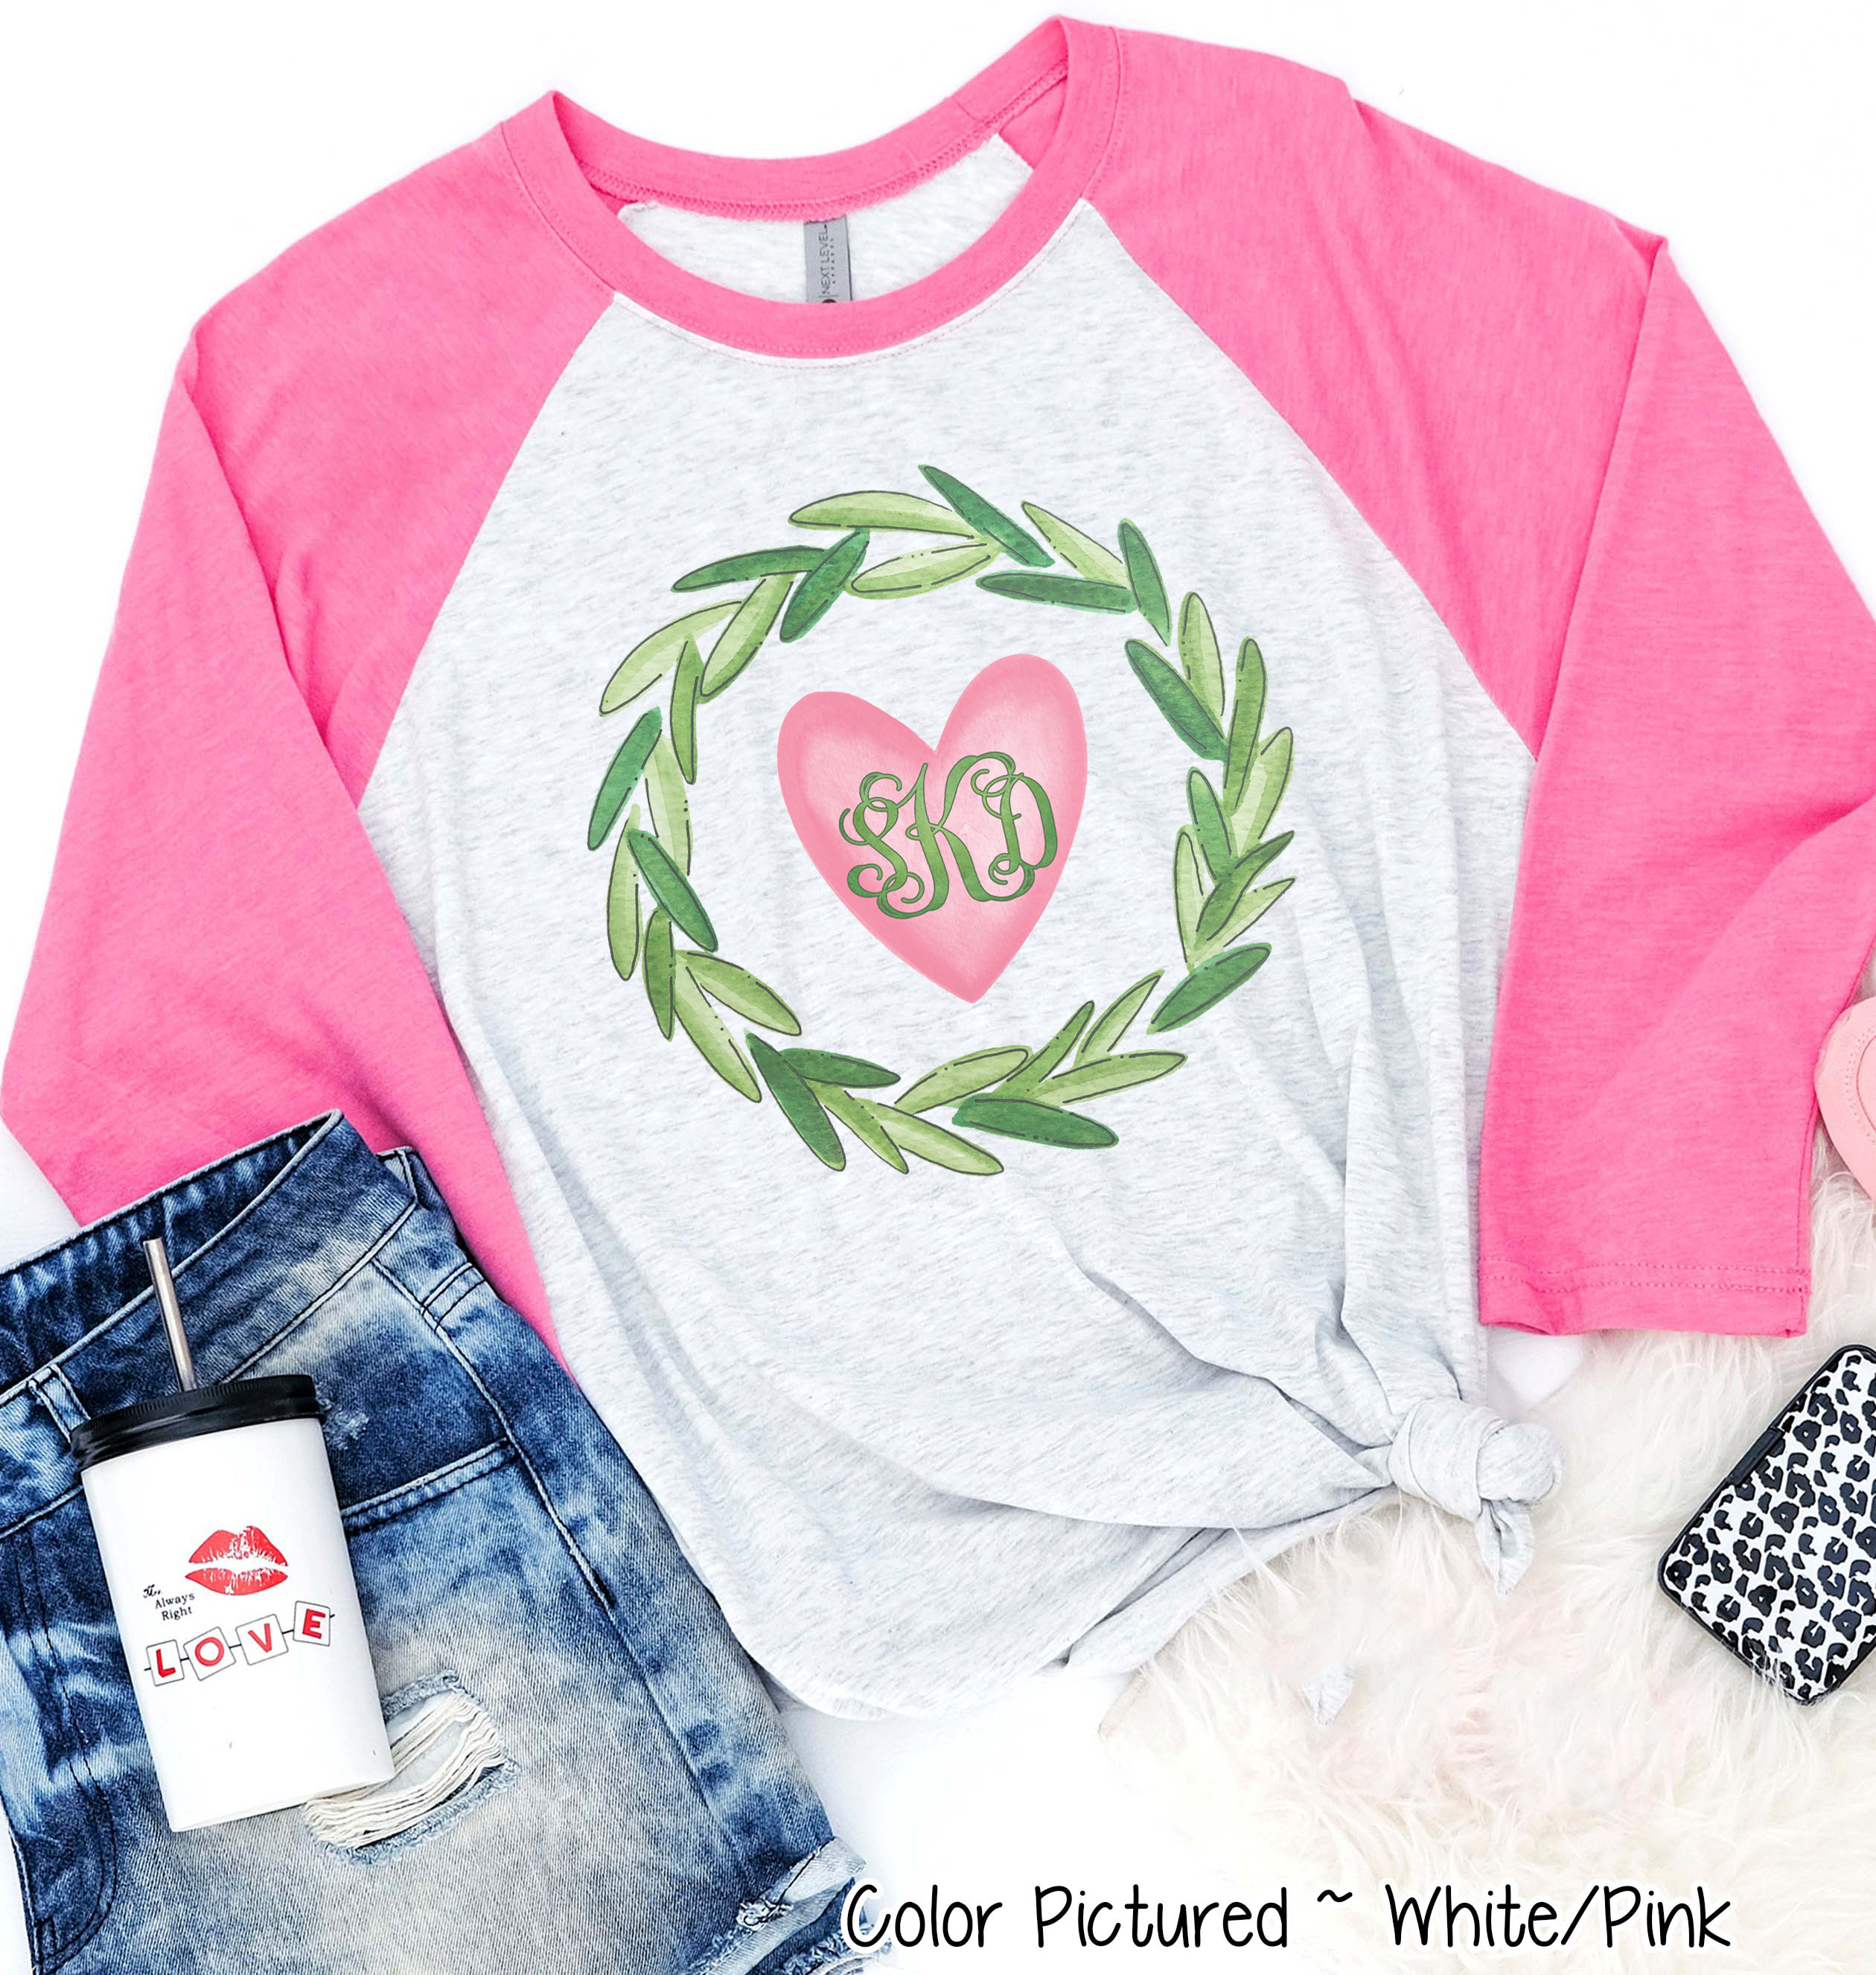 Monogram Green Wreath with Pink Heart Valentine Shirt